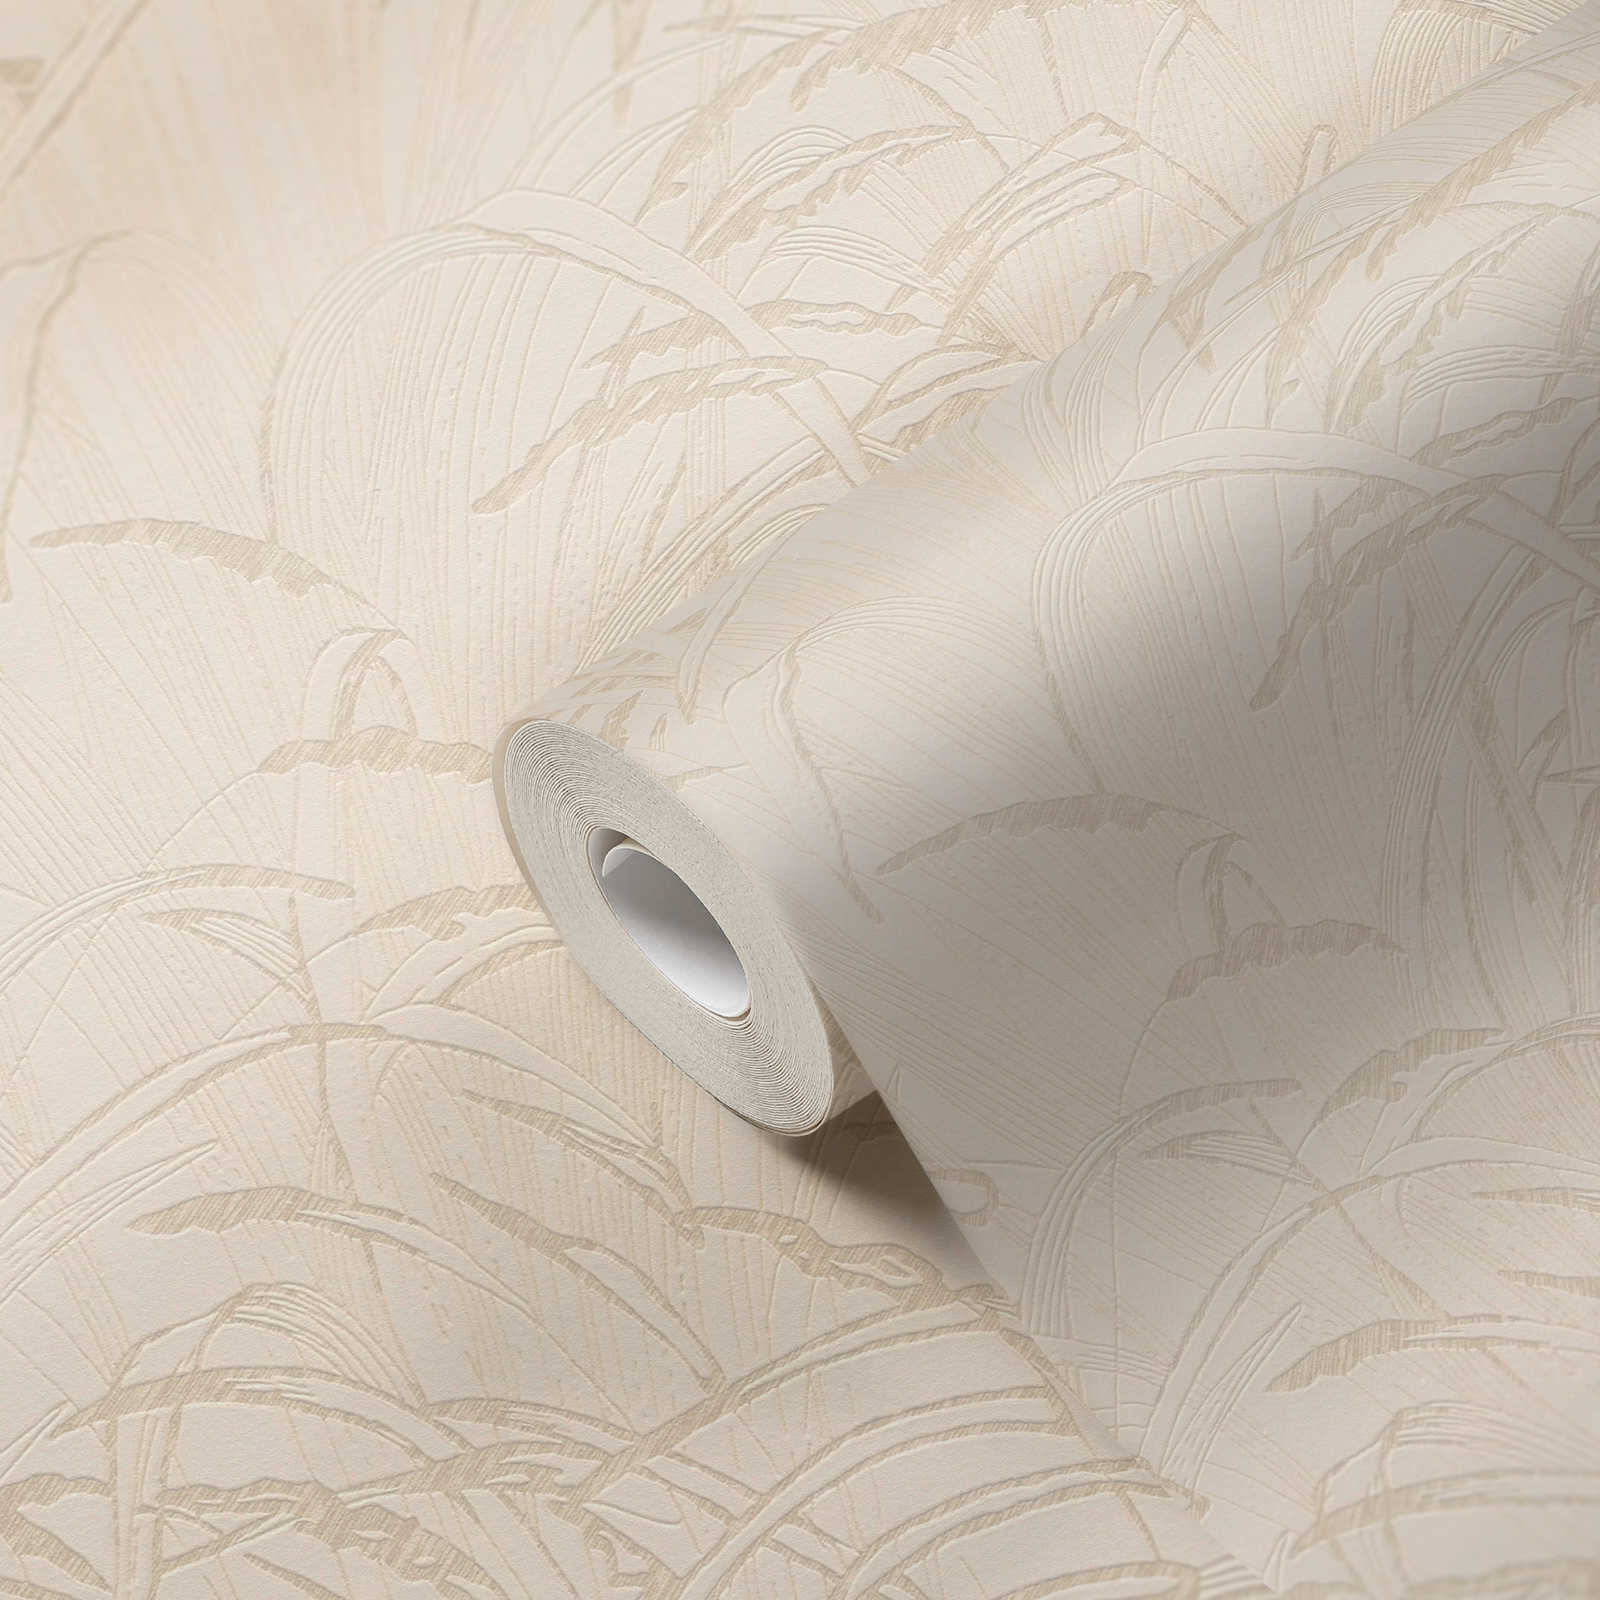             Natur Tapete Schilfblatt mit Metallic Farbe – Beige, Creme
        